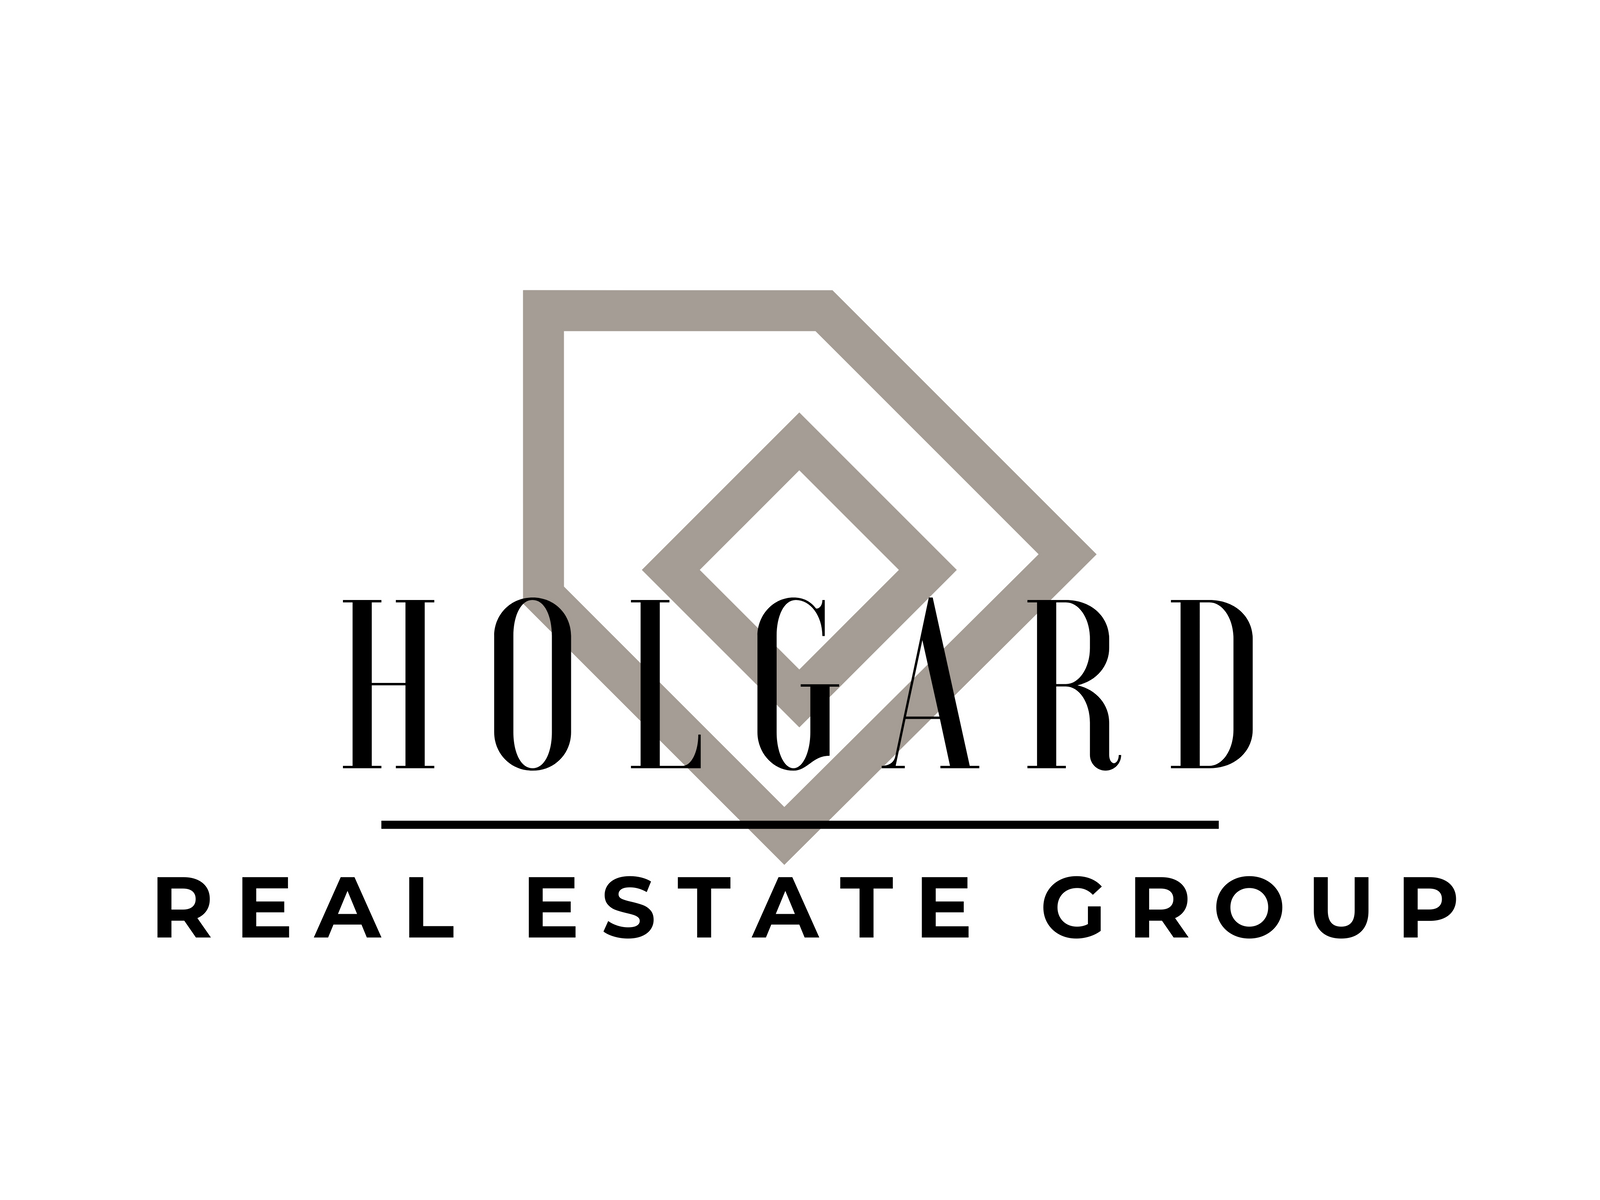 Holgard Real Estate Group logo